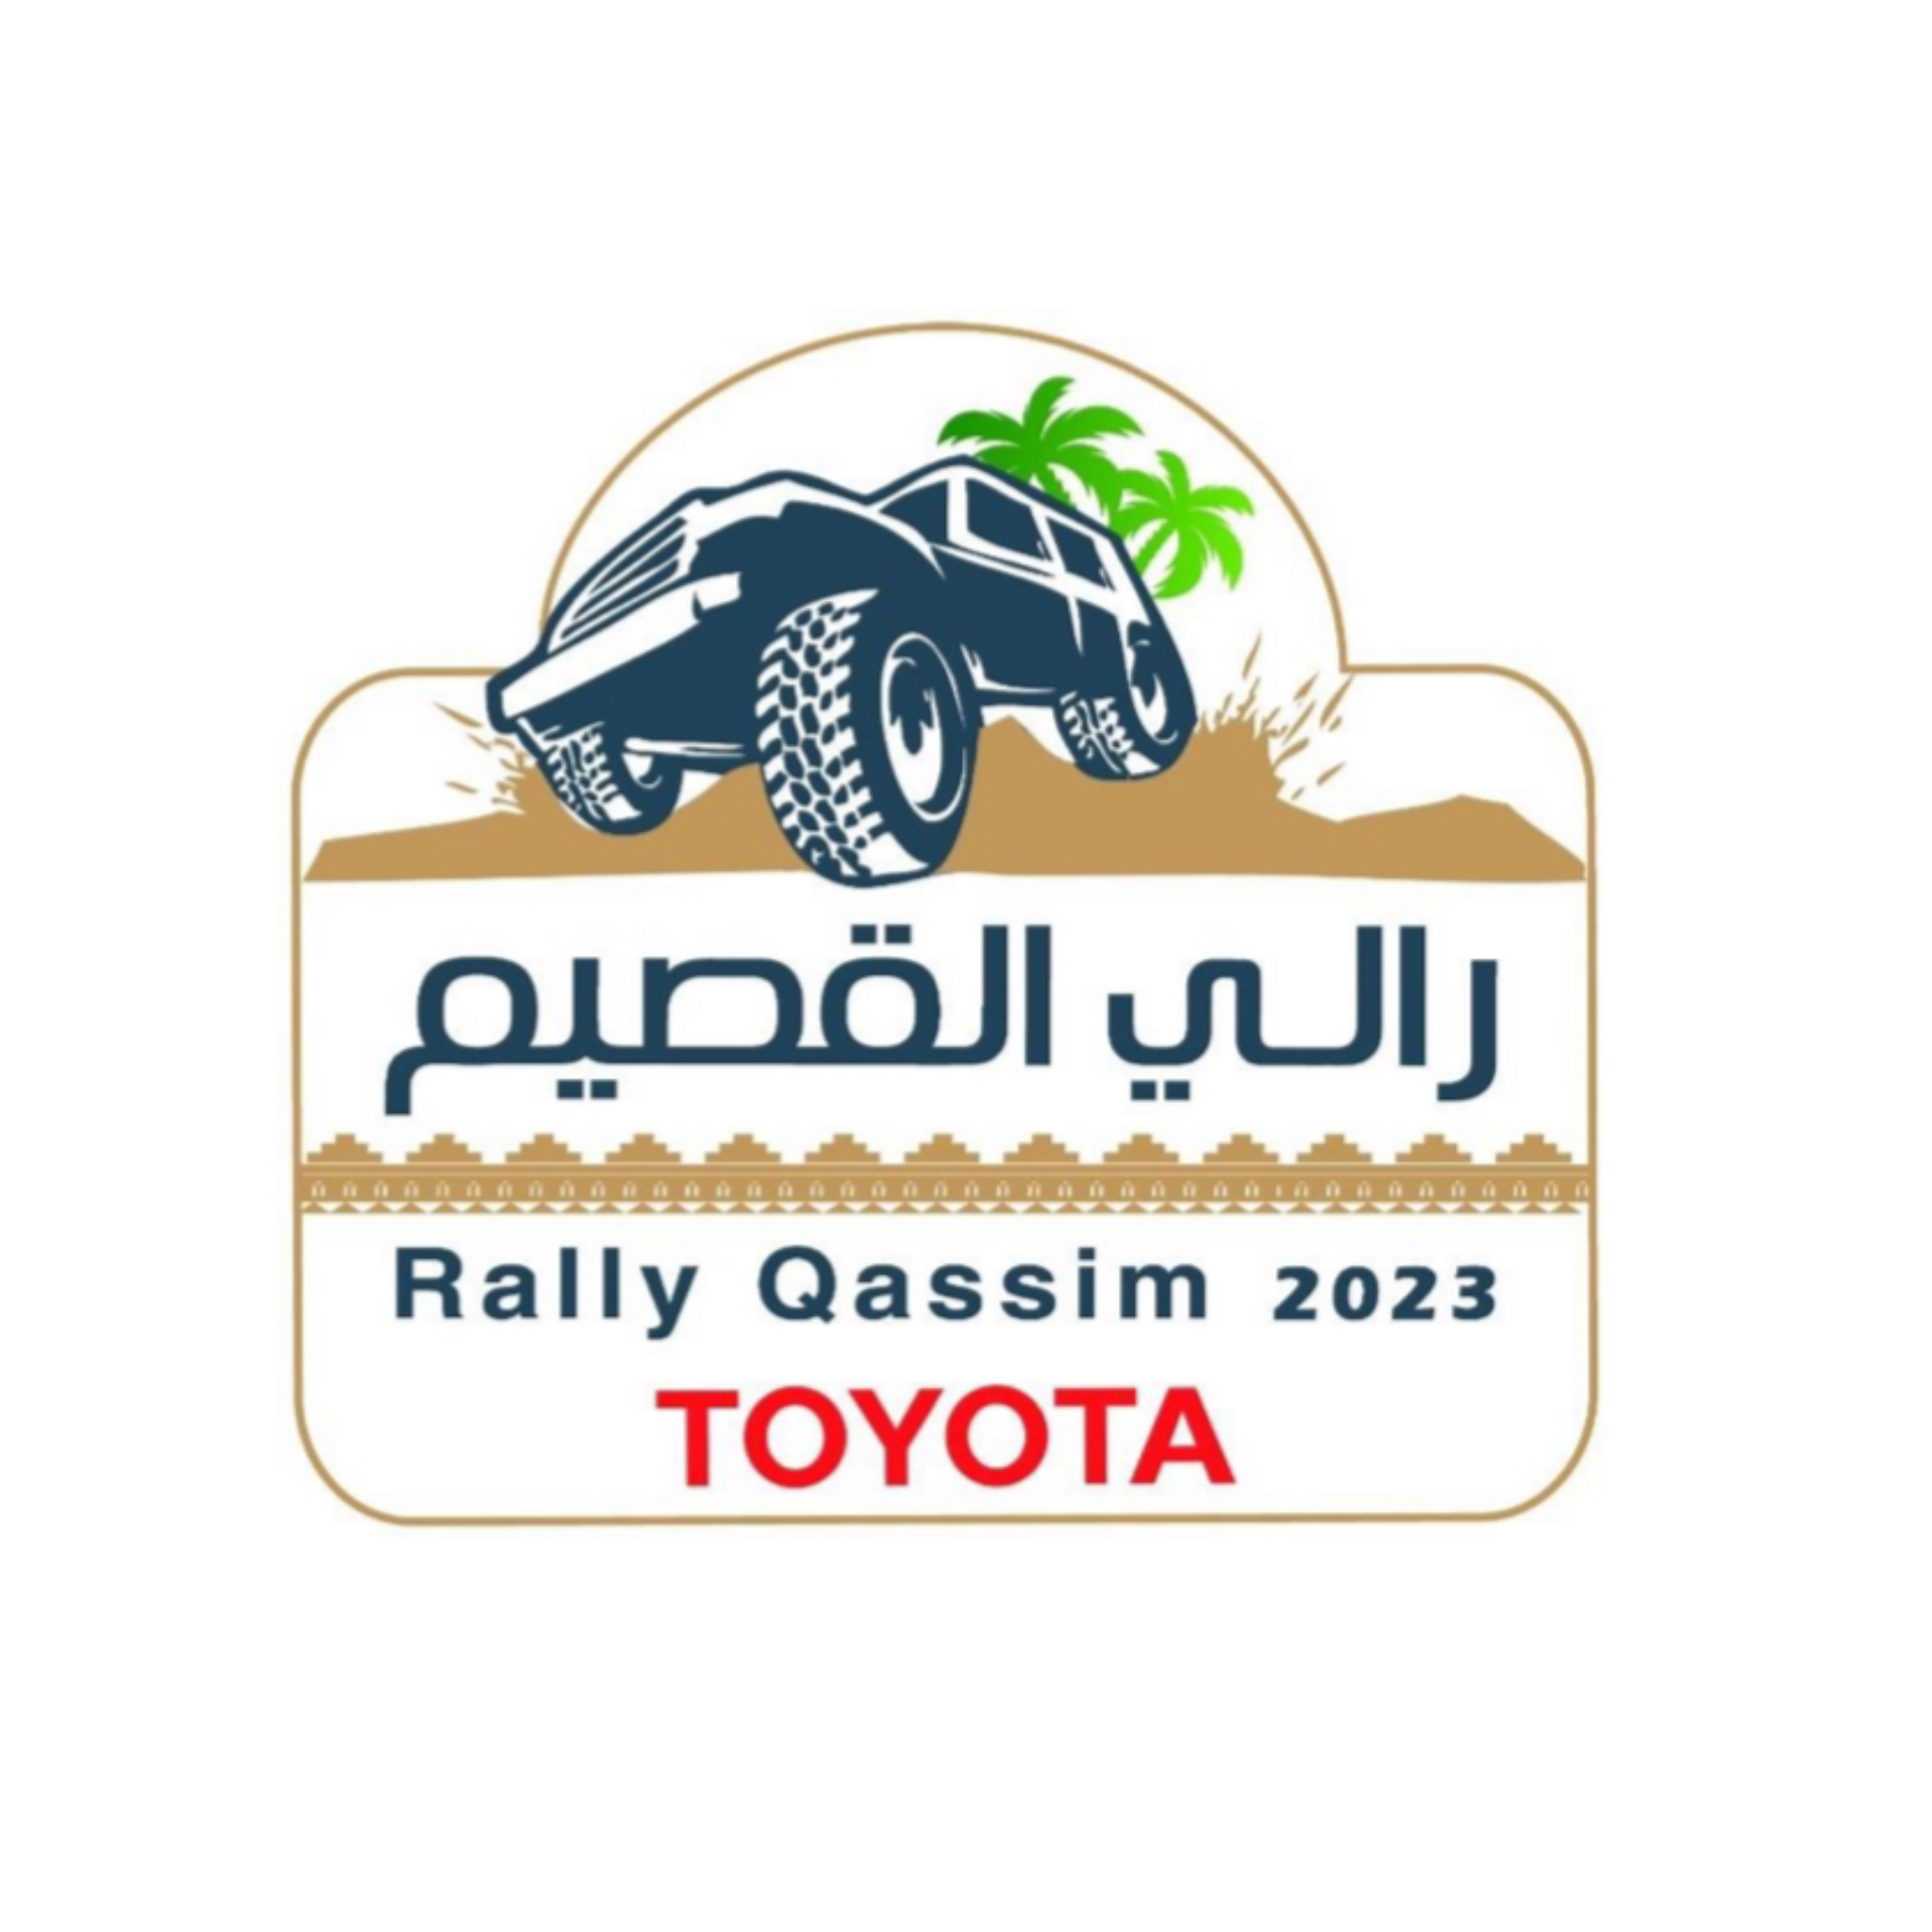 Qassim Rally 2023 🇸🇦